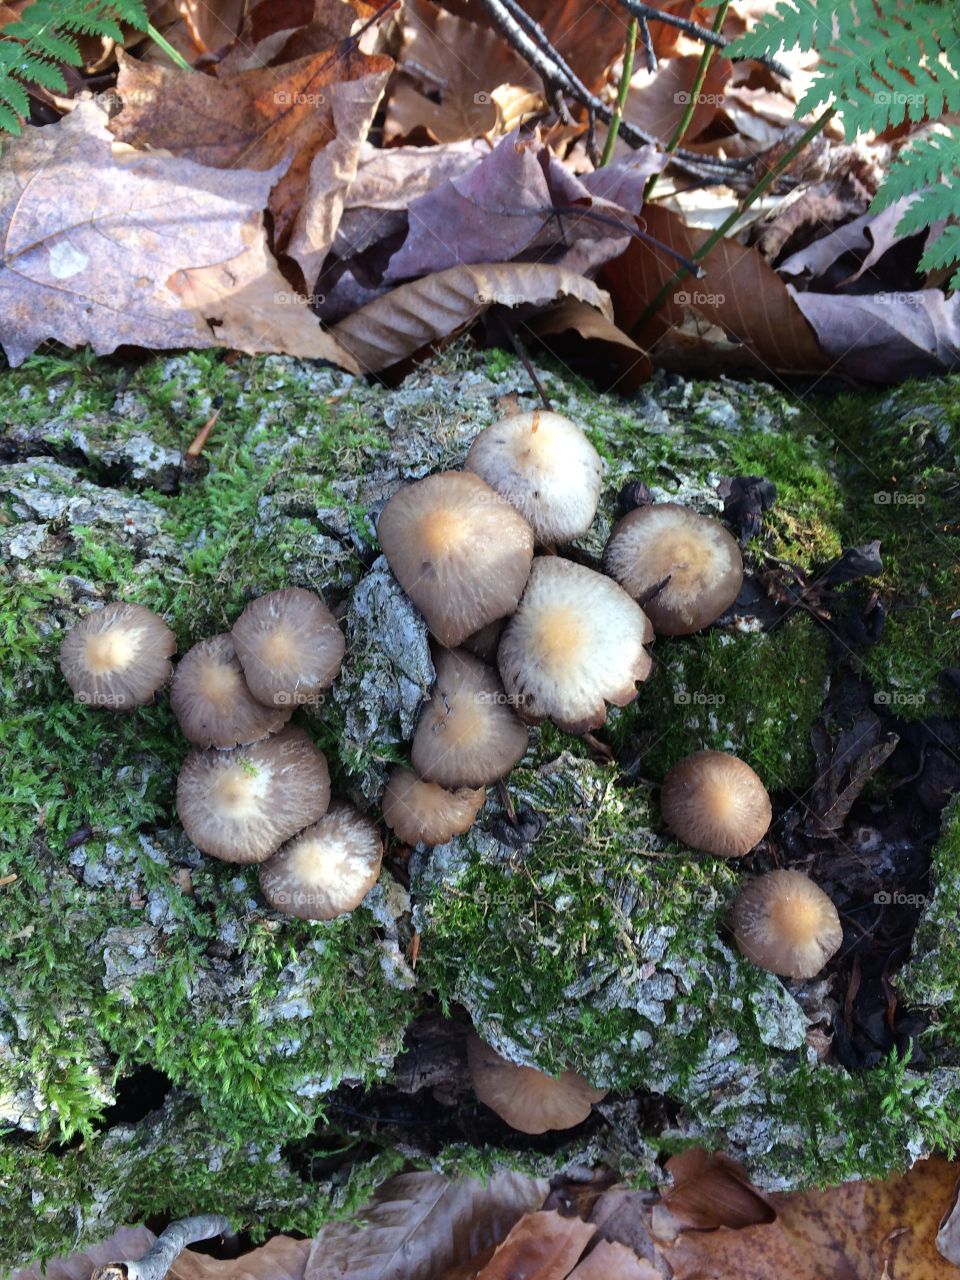 Mushrooms in the fall